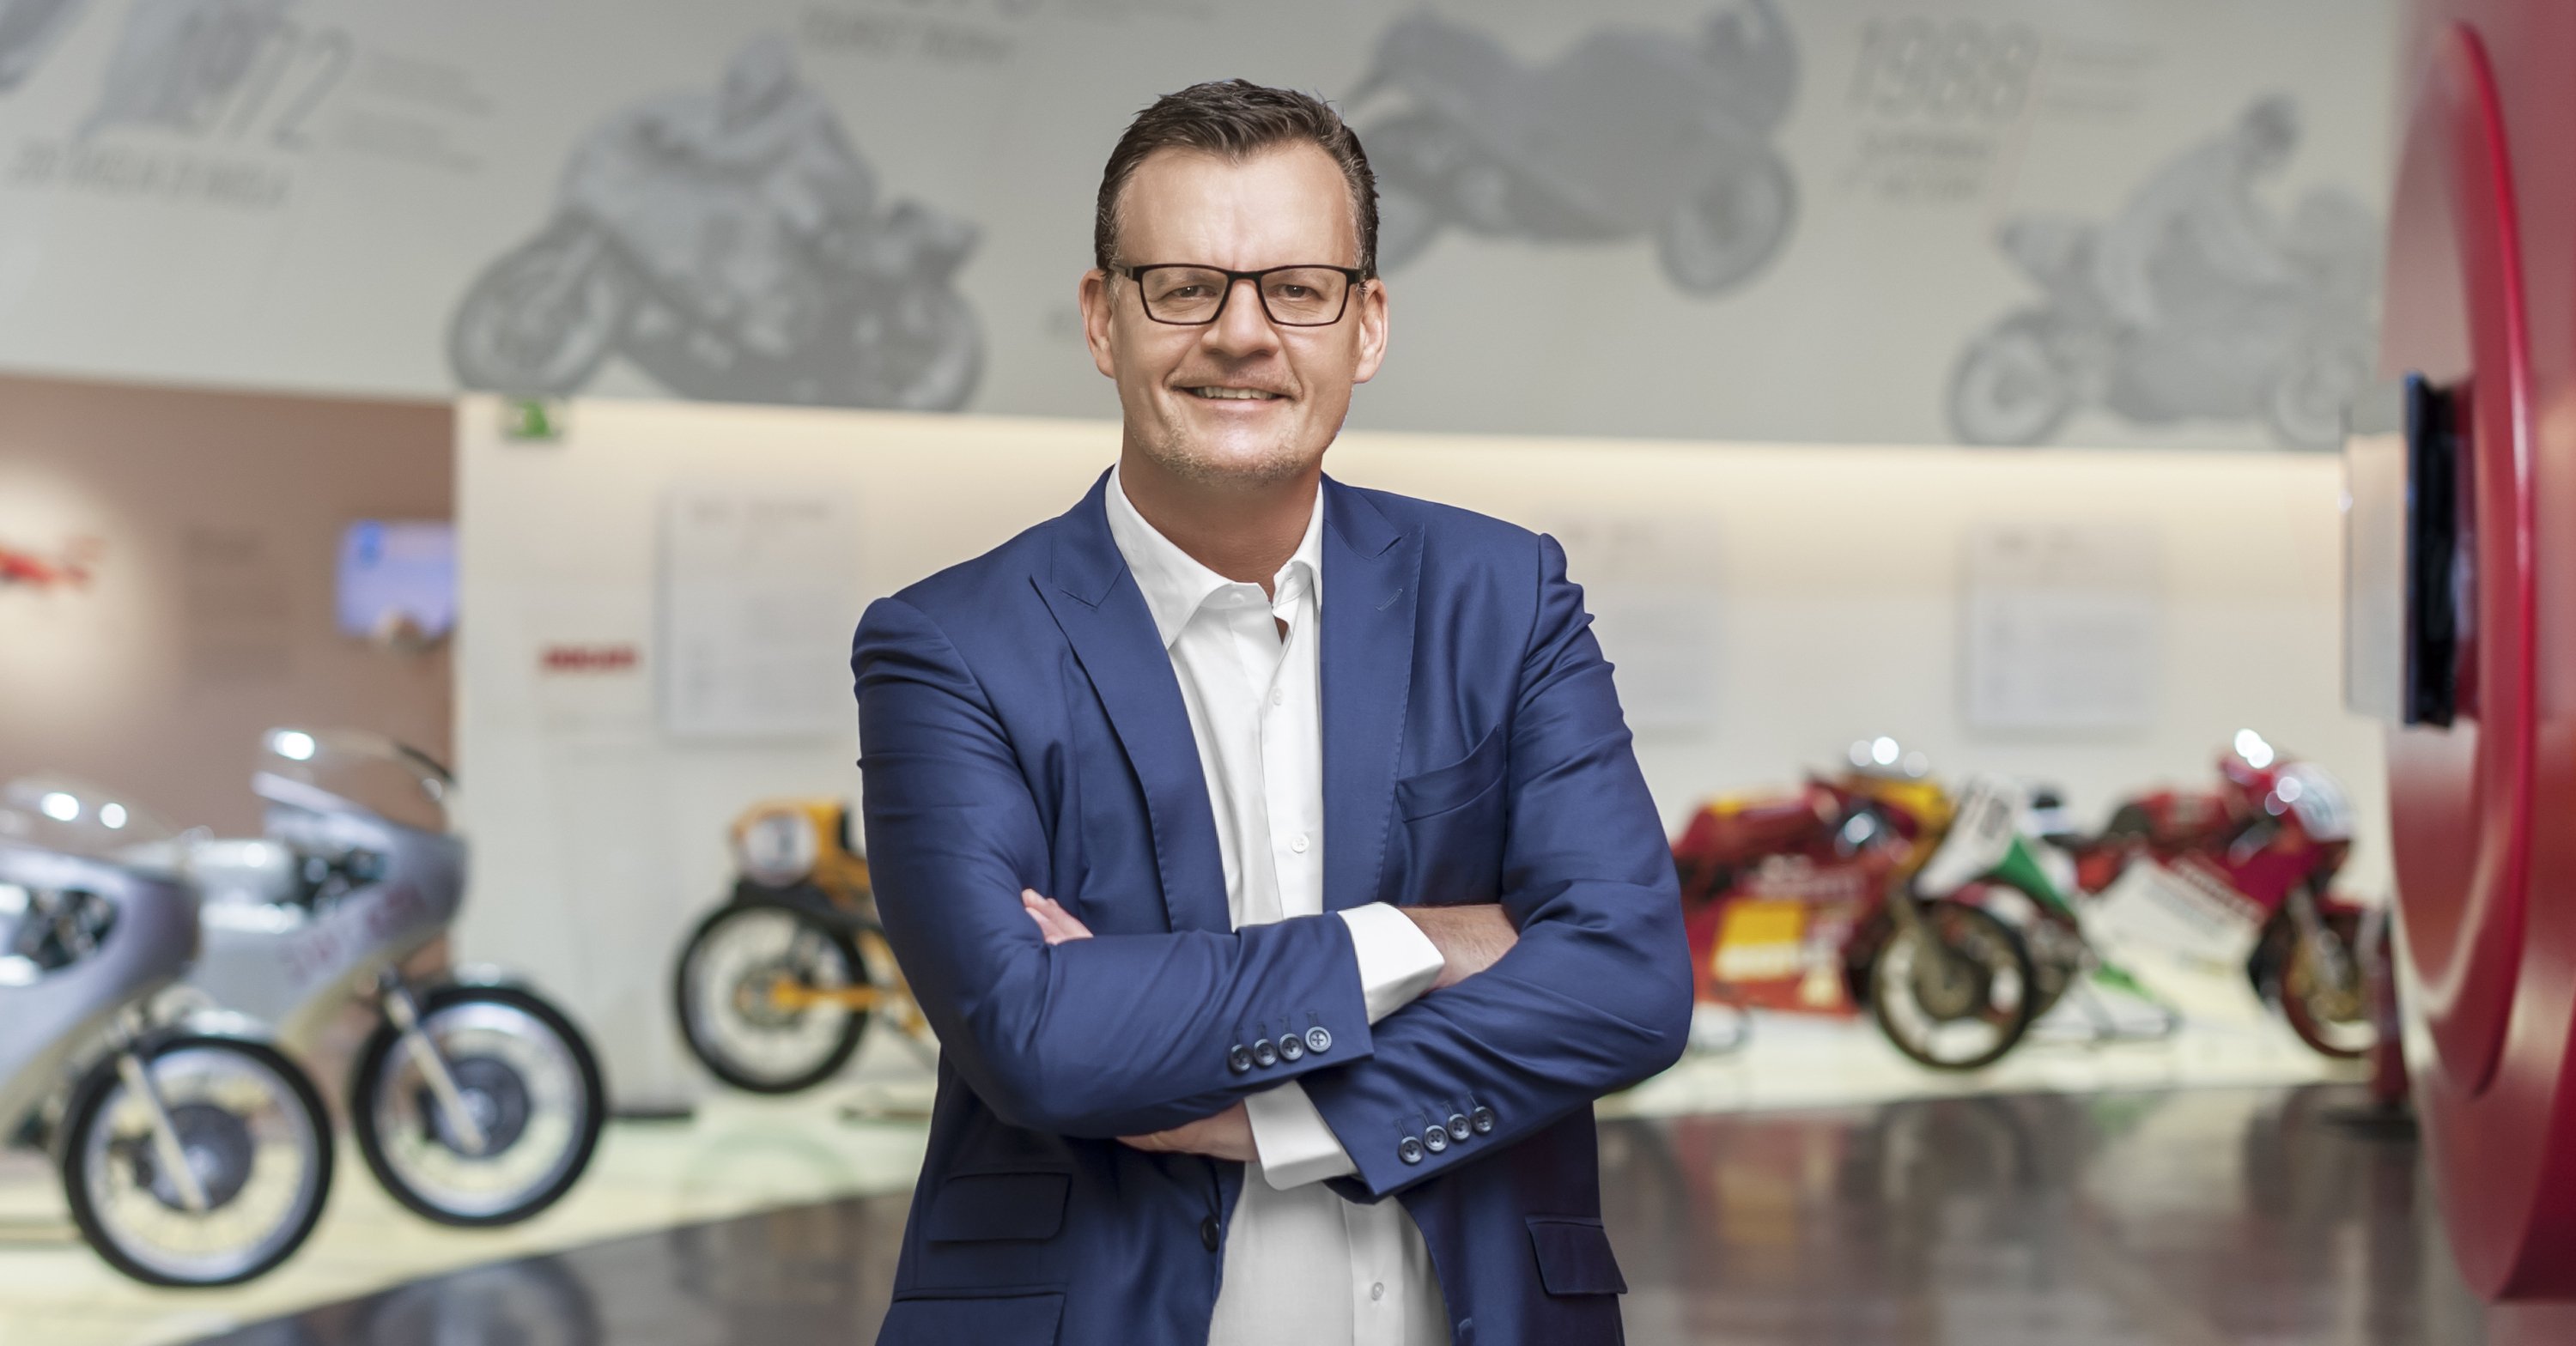 Ducati Motor Holding: Oliver Stein nuovo CFO